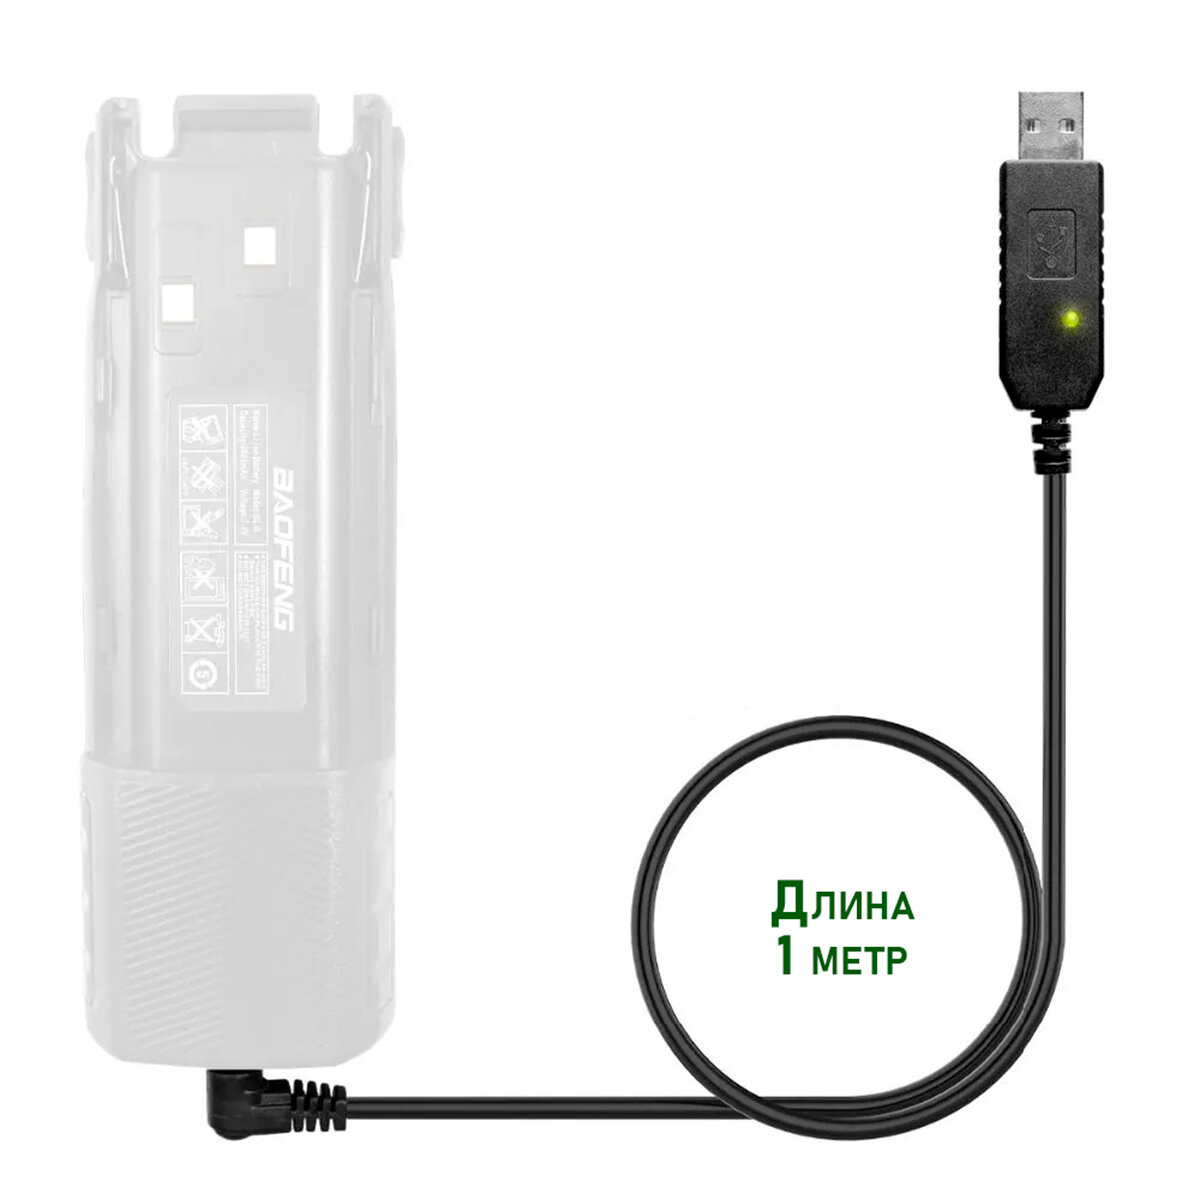 USB кабель - зарядное устройство для раций Baofeng и Kenwood с индикатором, комплект 2 шт